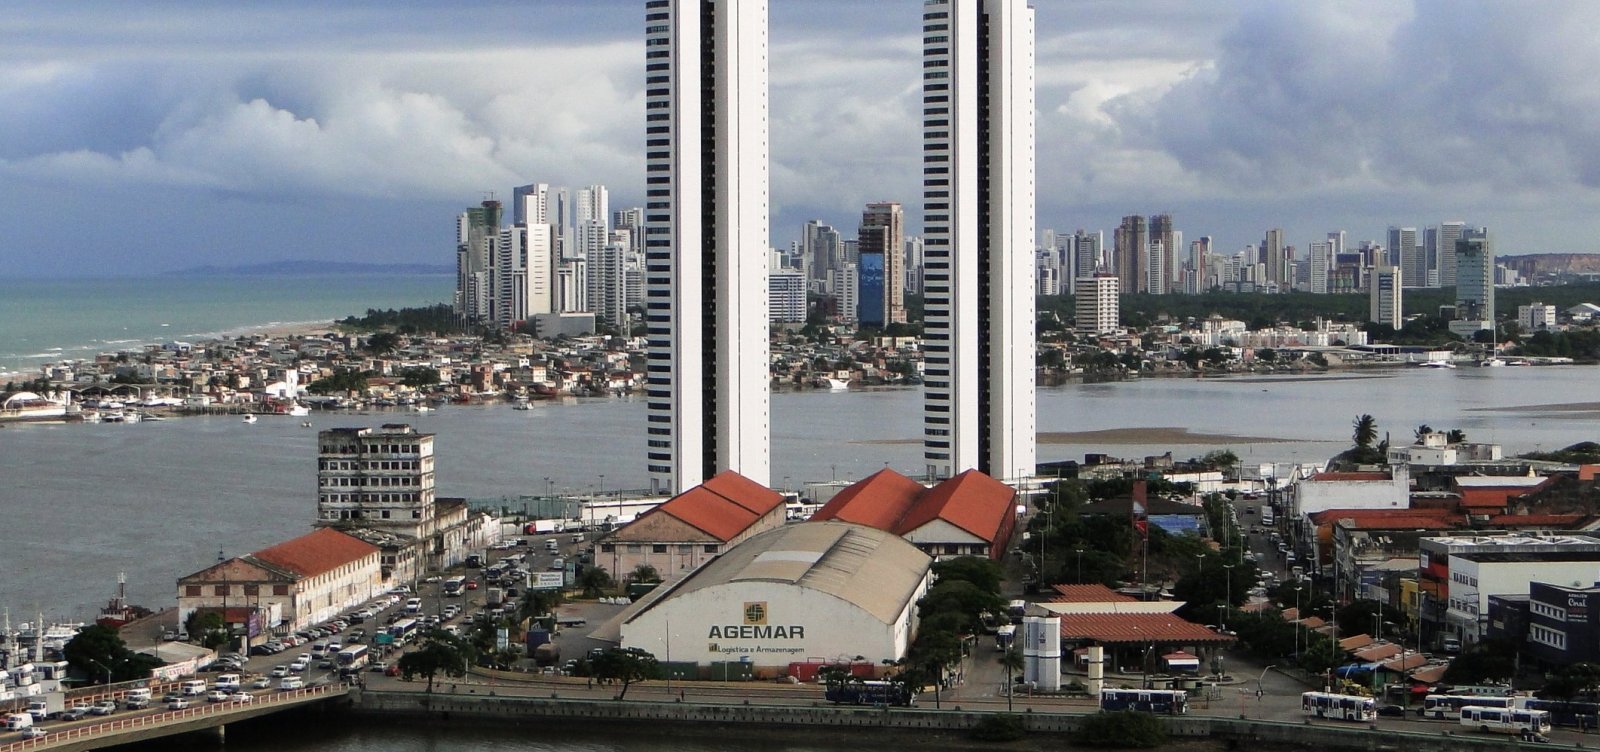 Morador festeiro vive nas Torres Gêmeas, em Recife